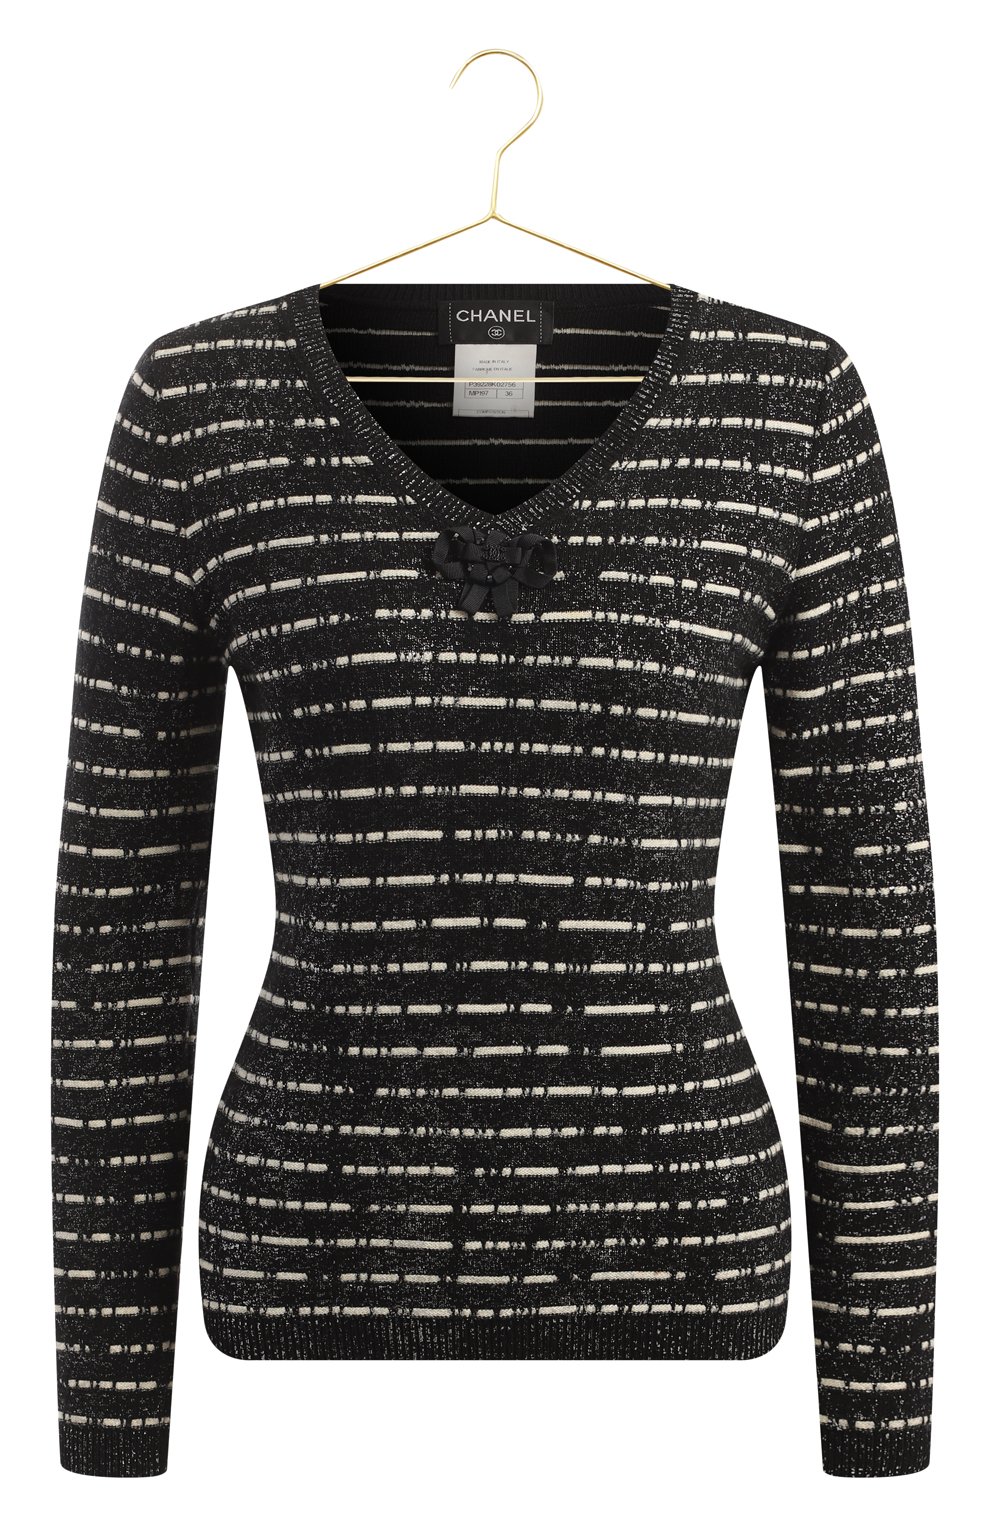 Пуловер из шерсти и кашемира | Chanel | Чёрно-белый - 1